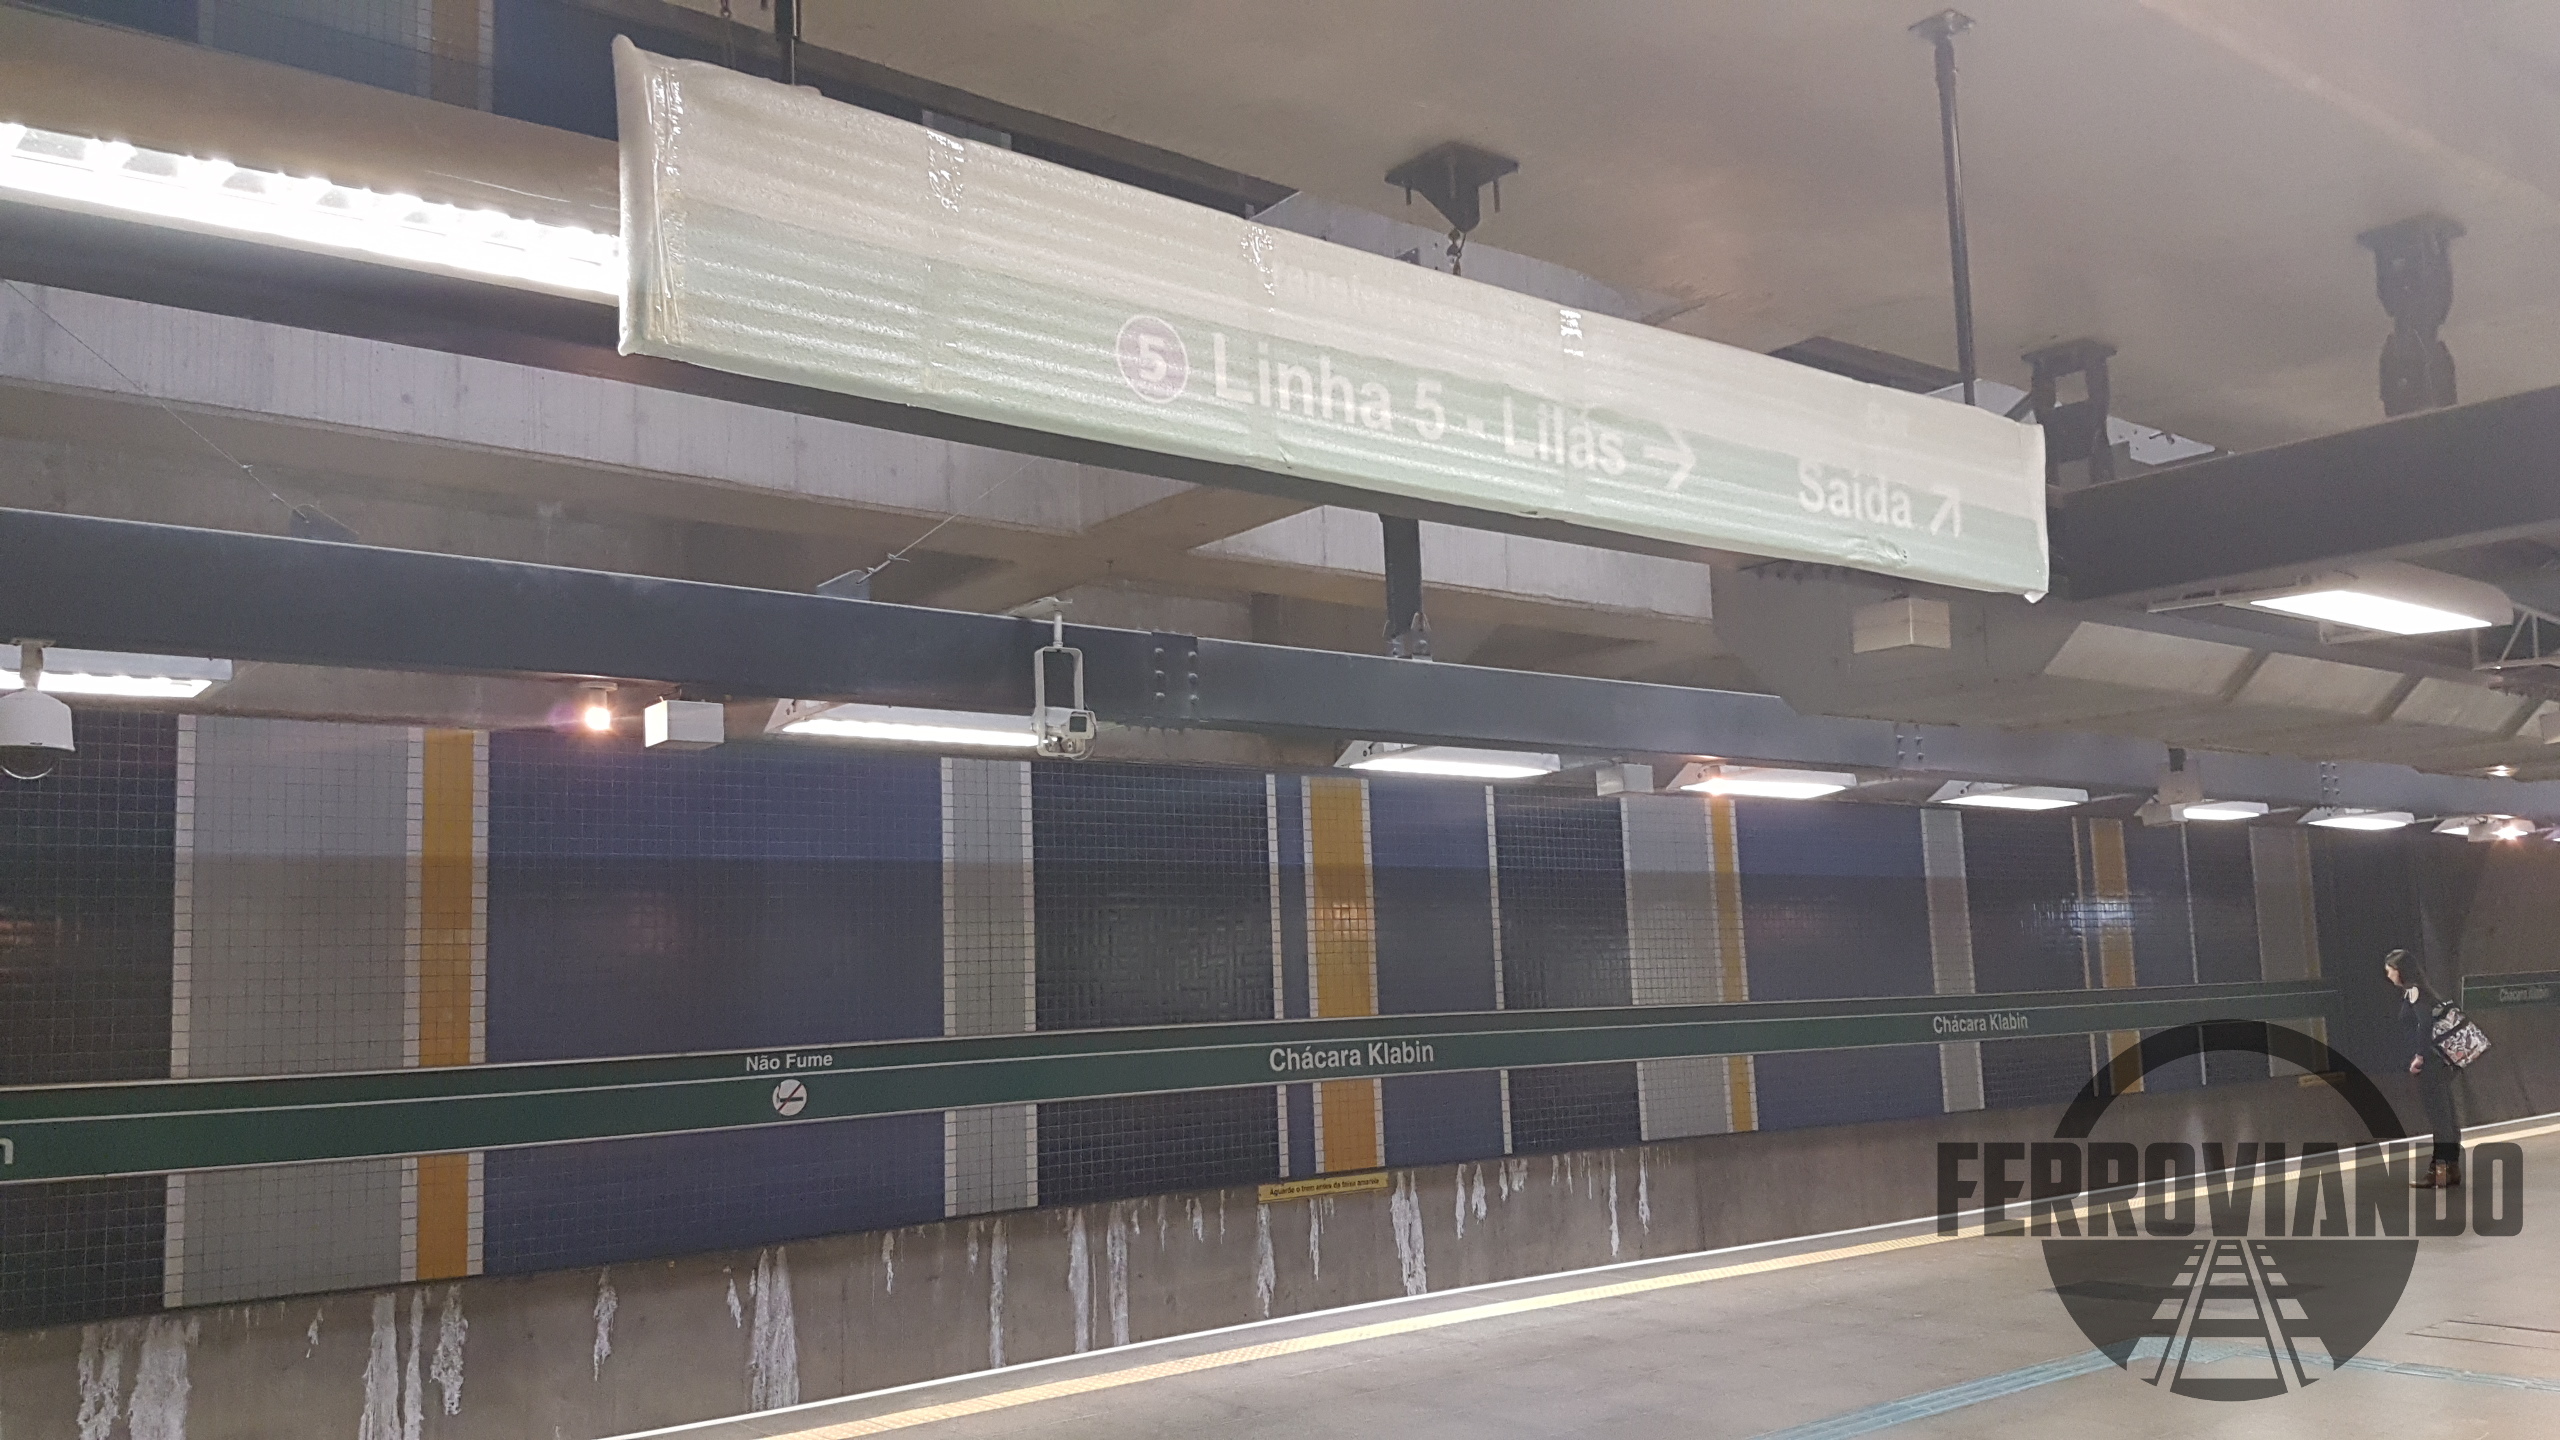 Indicação de acesso da Linha 5 Lilás (Fernando Galfo)